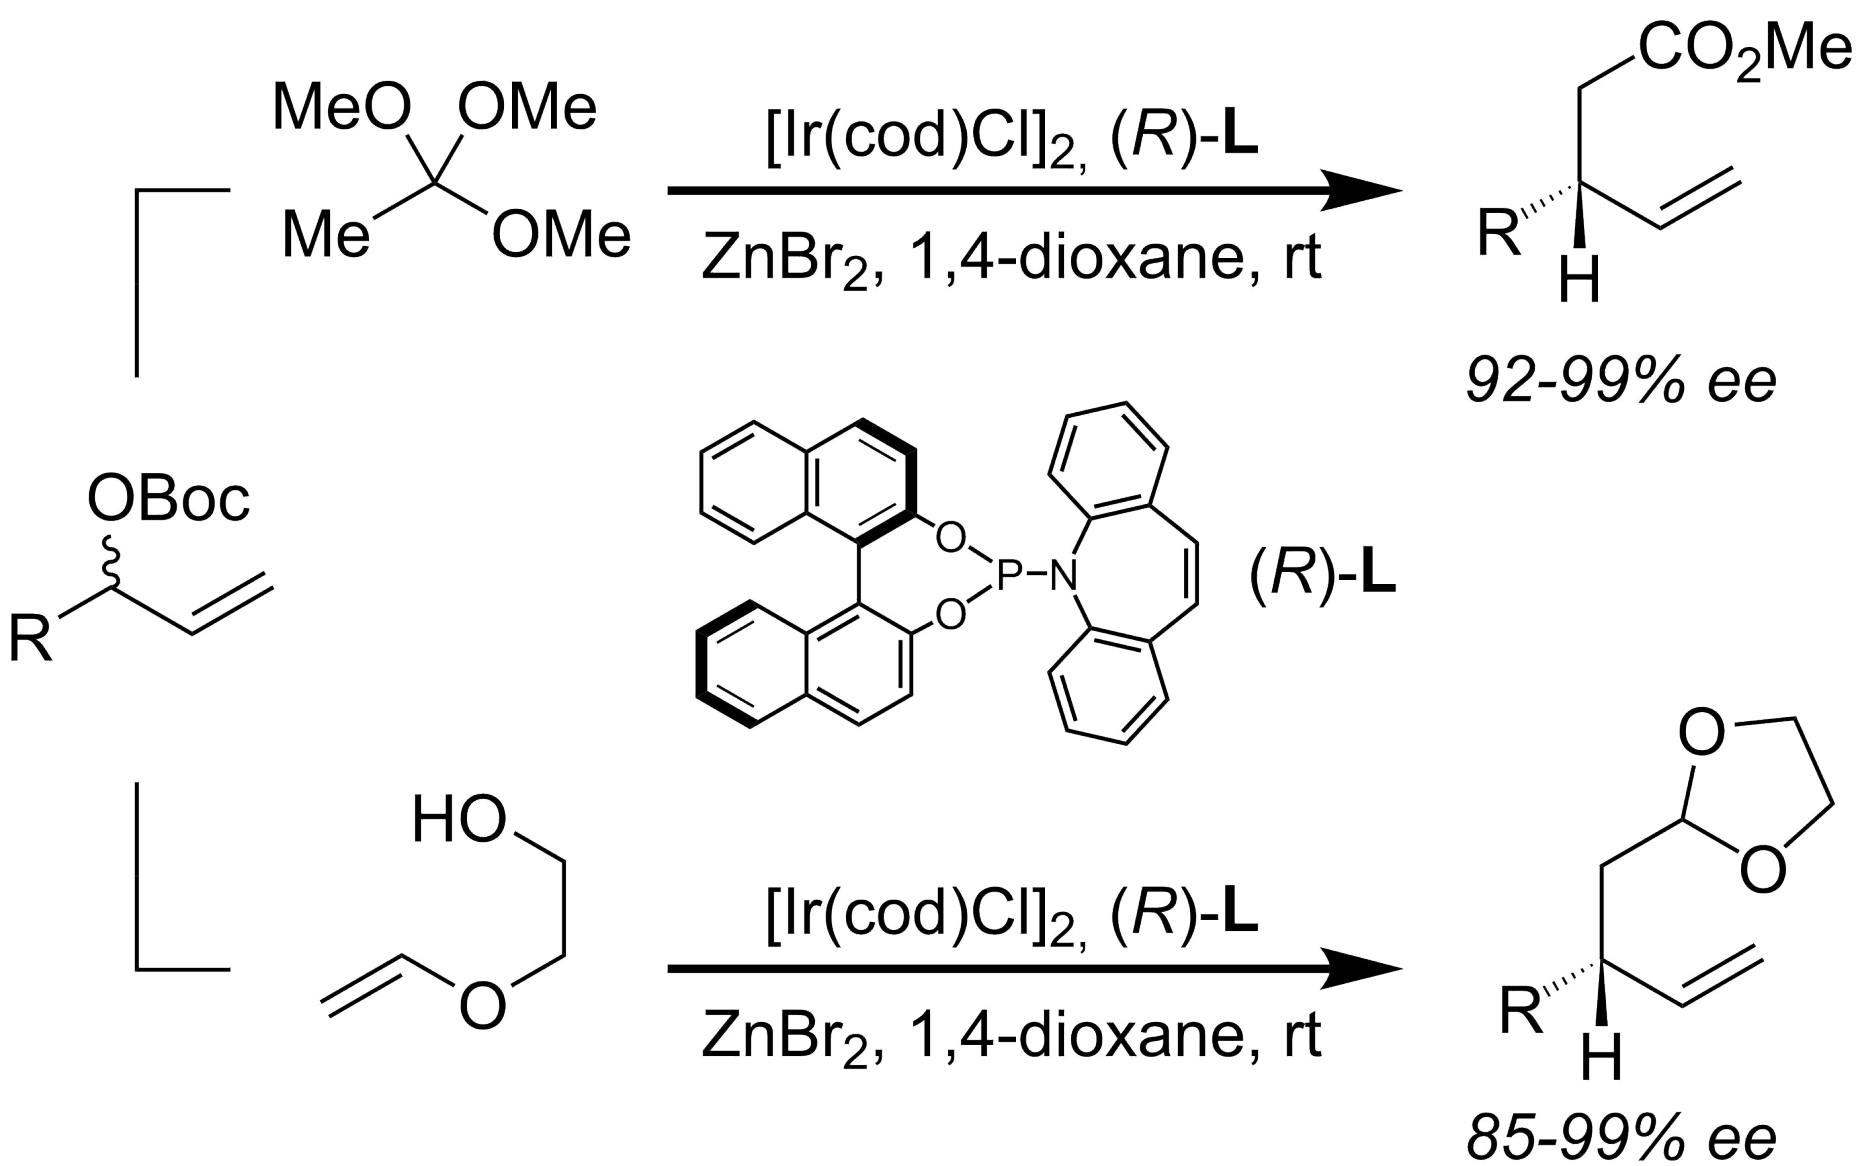 Trimethyl Orthoacetate and Ethylene Glycol Mono-Vinyl Ether asEnolate Surrogates in Enantioselective Iridium-Catalyzed Allylation